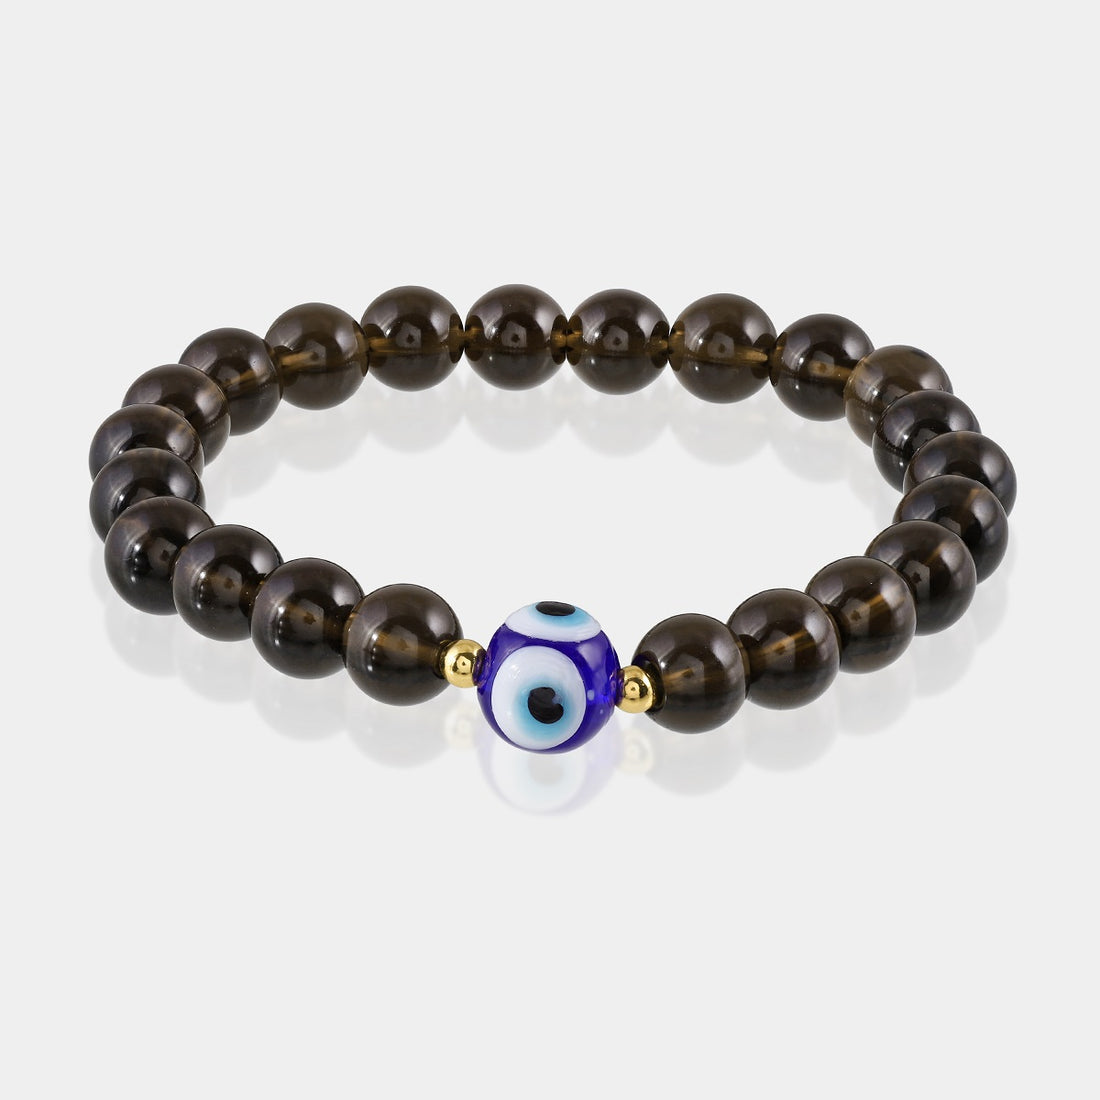 Close-up of smooth round Smoky Quartz gemstone beads in a captivating smoky hue.